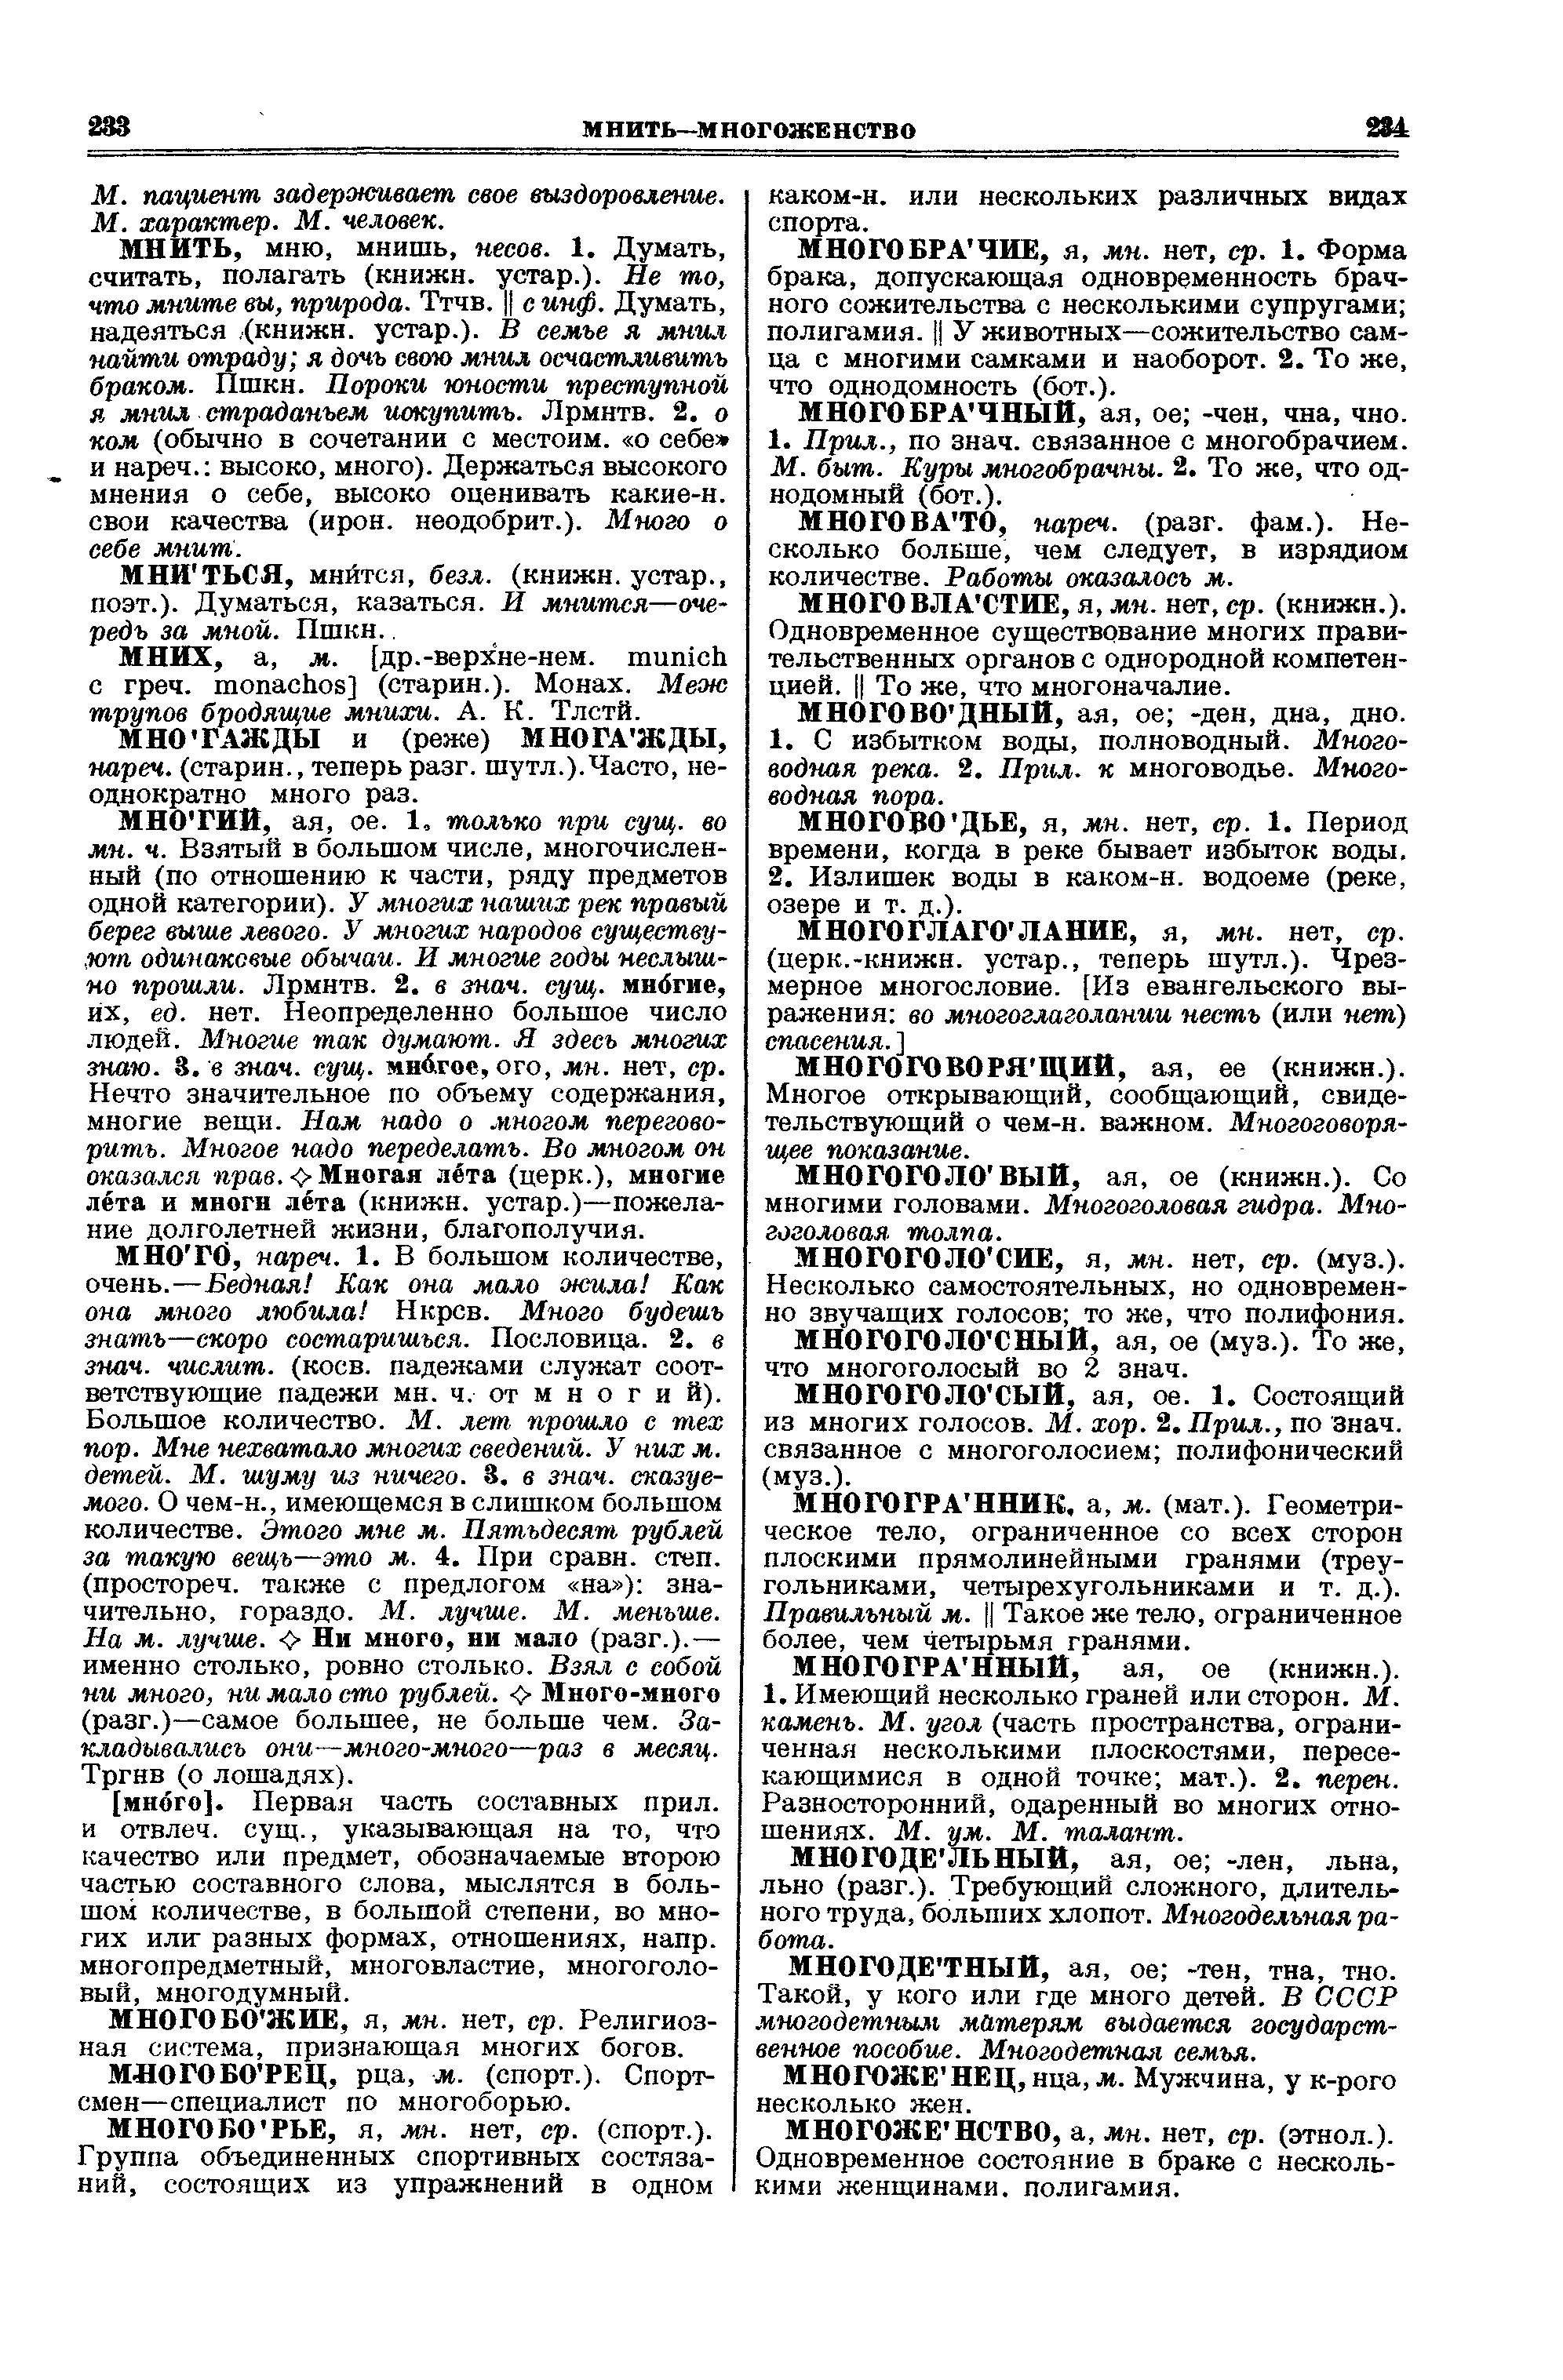 Фотокопия pdf / скан страницы 117 толкового словаря Ушакова (том 2)